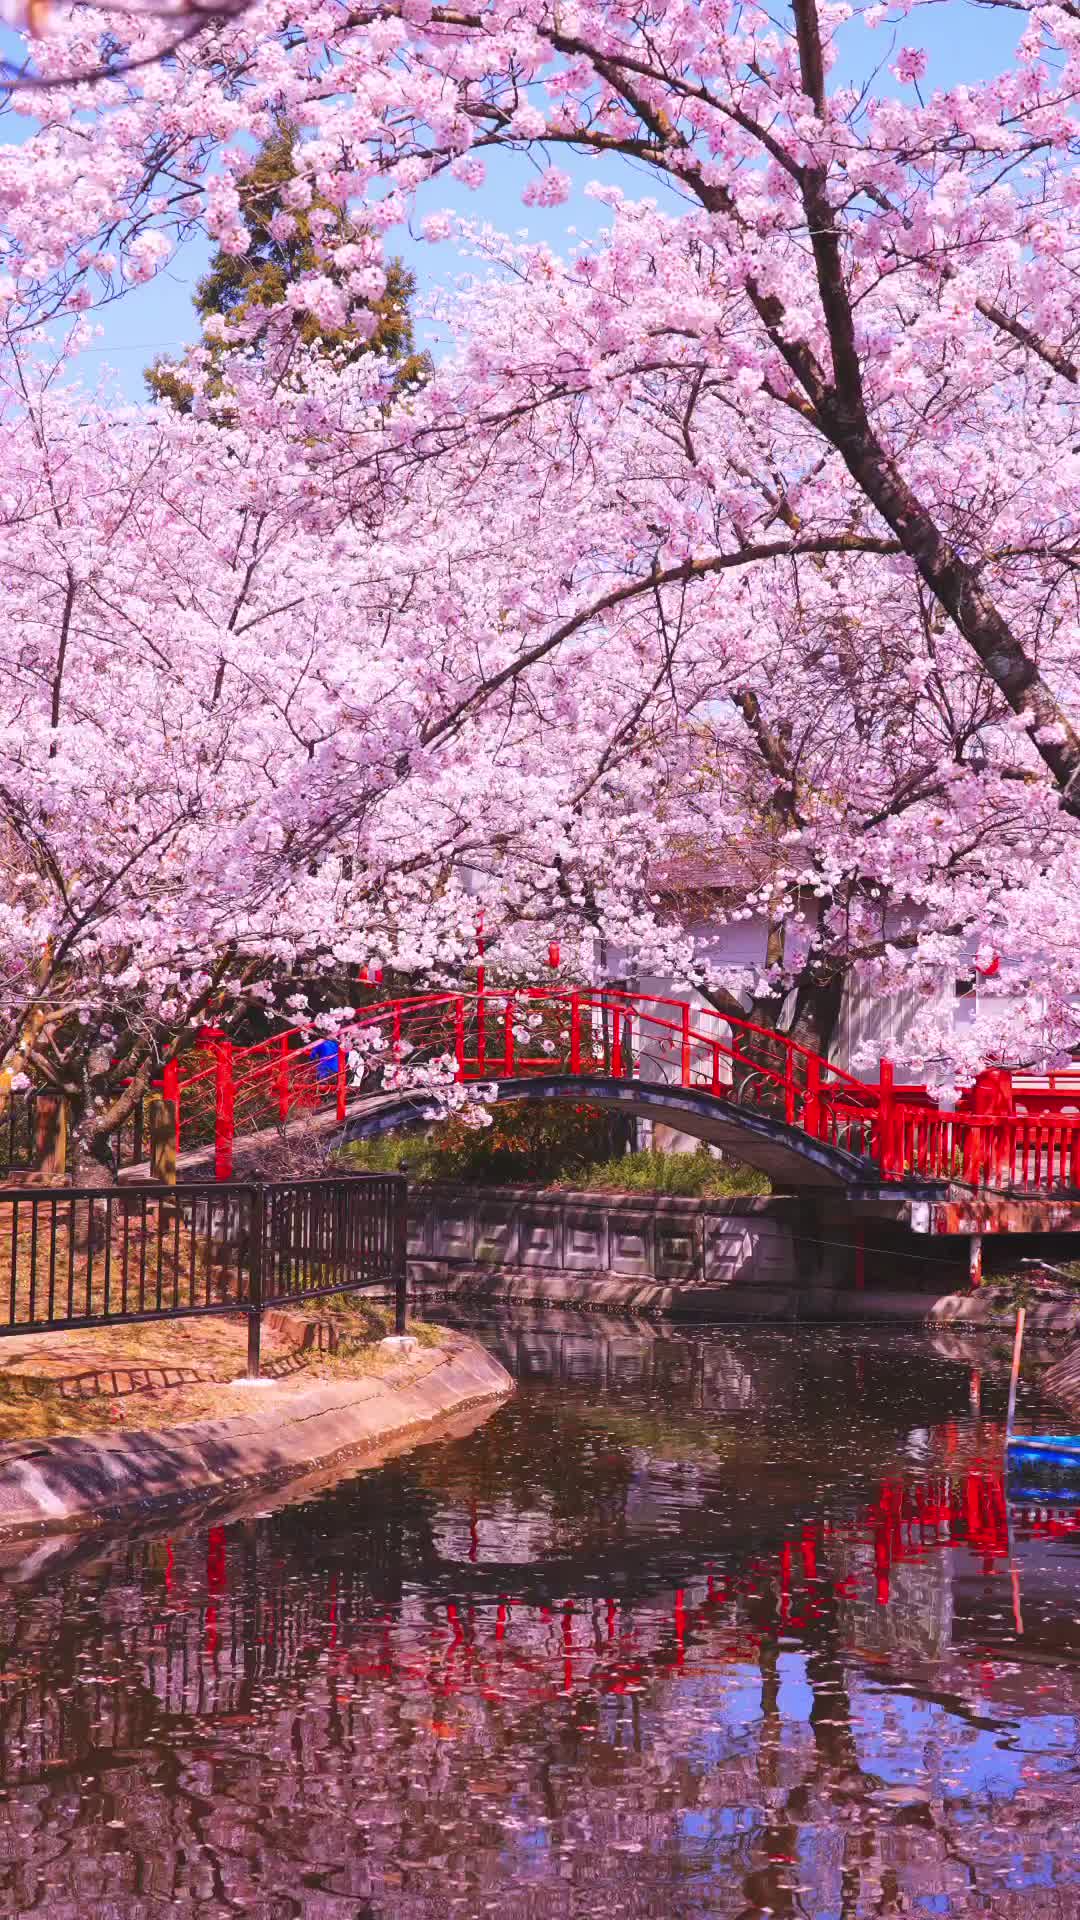 視界を埋め尽くす二千本の桜「朝日山森林公園」
香川県三豊市にある朝日山森林公園は桜の名所として有名です。春になると約2000 本の桜が満開となり、山を埋め尽くす光景は圧巻。夜にはライトアップもされ幻想的な風景が広がります。

Asahiyama Forest Park" with 2,000 cherry trees filling the field of view
Asahiyama Forest Park in Mitoyo City, Kagawa Prefecture, is famous for its cherry blossoms. In spring, approximately 2,000 cherry trees are in full bloom, filling the mountain with a spectacular sight. At night, the park is illuminated to create a fantastic scene.

#香川県 #香川 #三豊 #朝日山森林公園